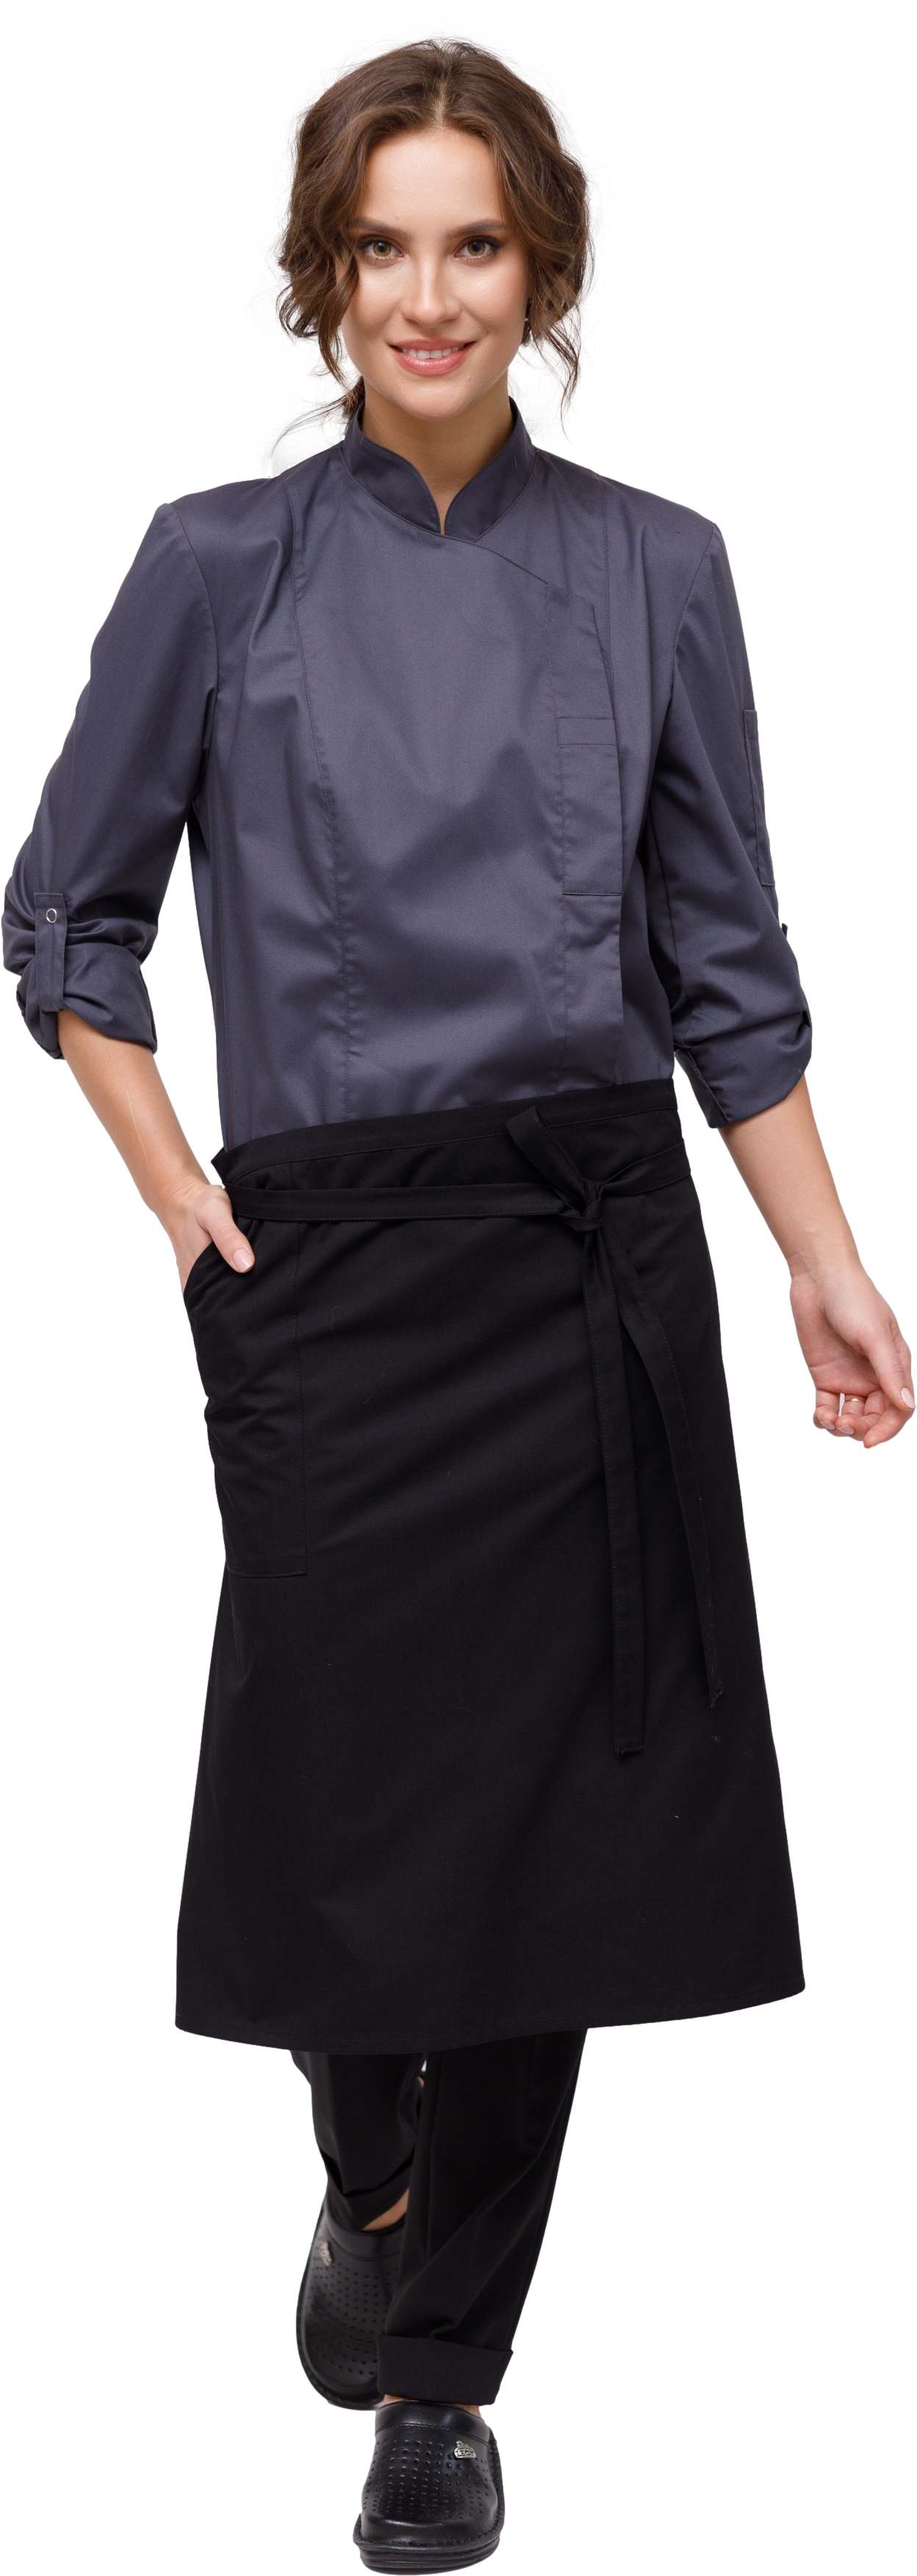 Комплект для повара LINCOLN - китель / фартук / брюки женский темно серый 0